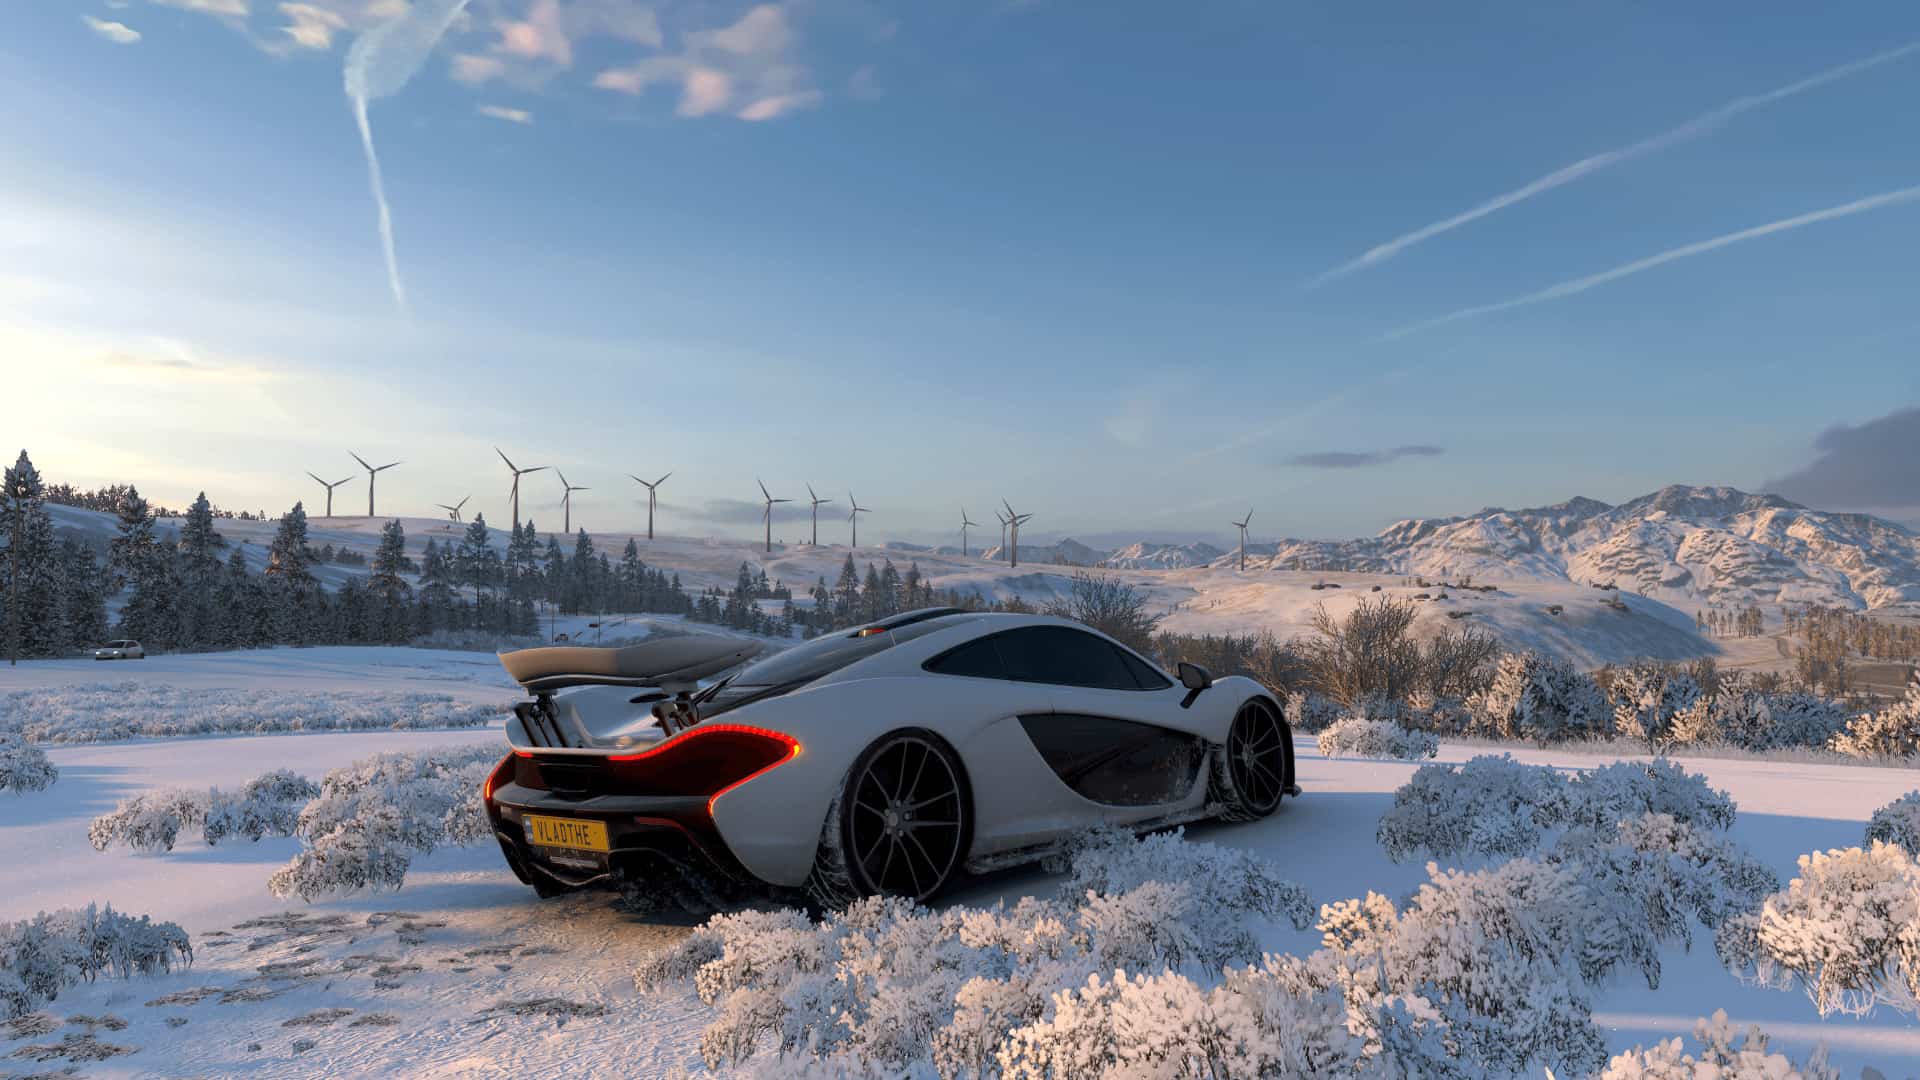 Forza Horizon 5 2